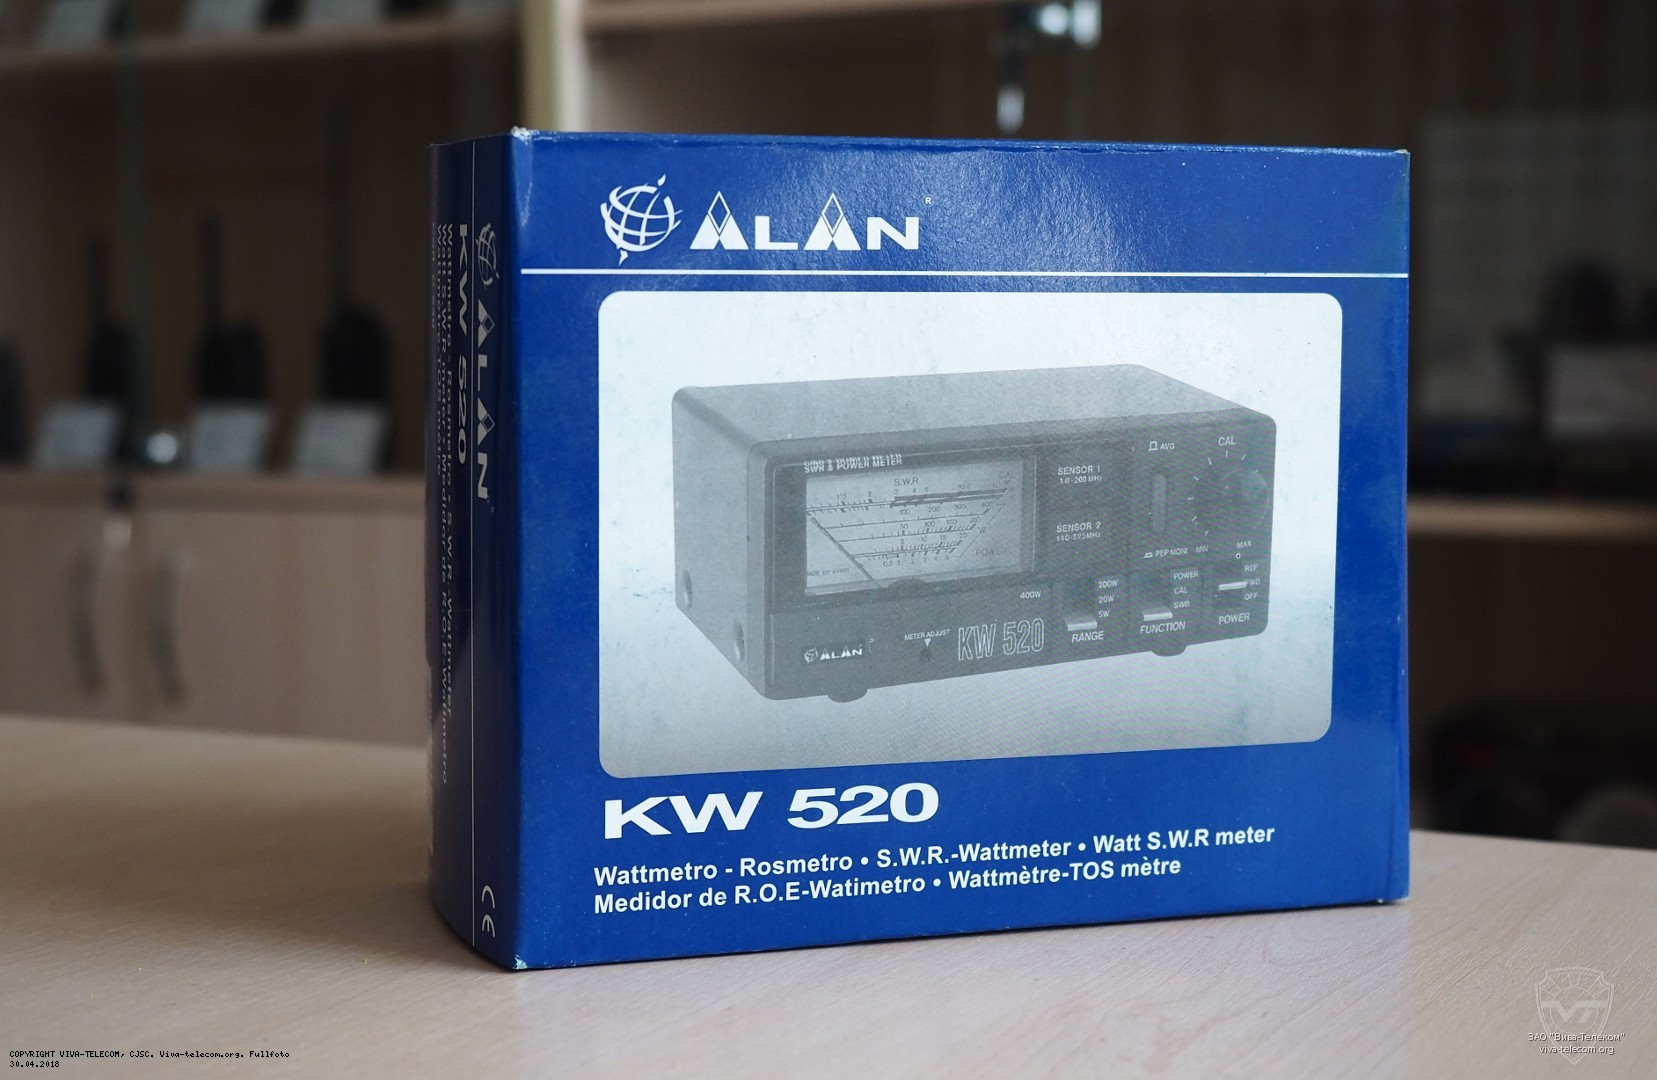    Alan KW-520